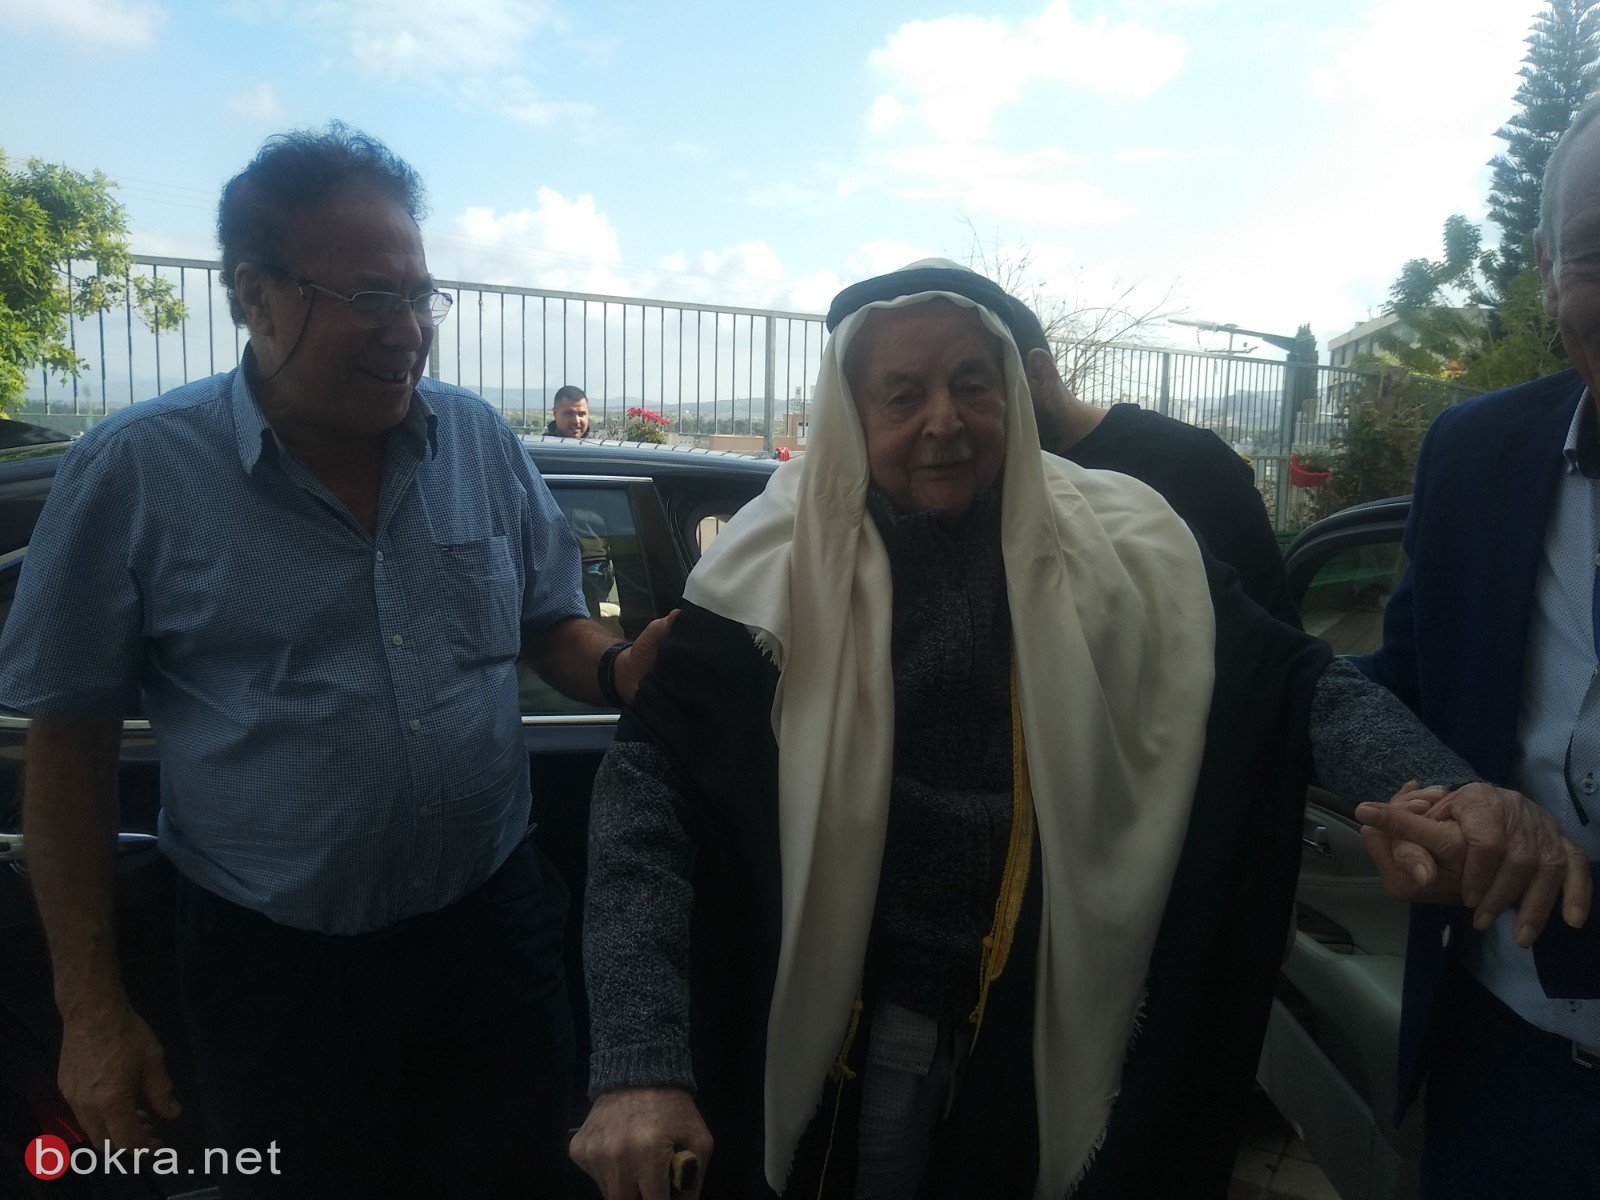 الحاج أحمد أبو عيّاش (102 عامًا) من عيلوط، يدلي بصوته ويدعو بالتصويت للمشتركة-4